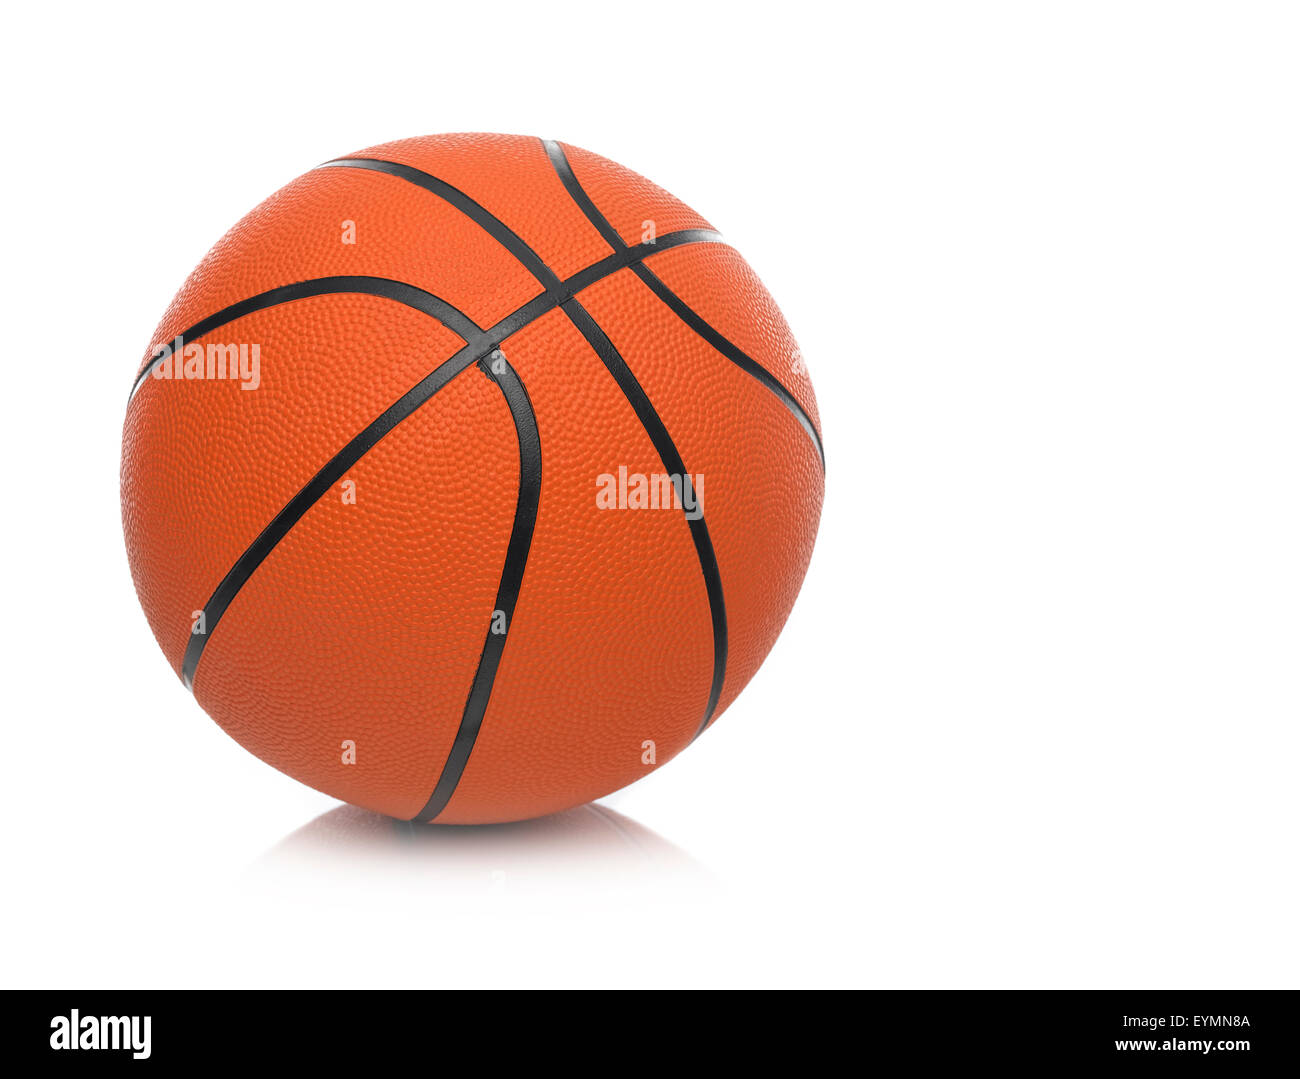 Single Basketball isolated on white Stock Photo